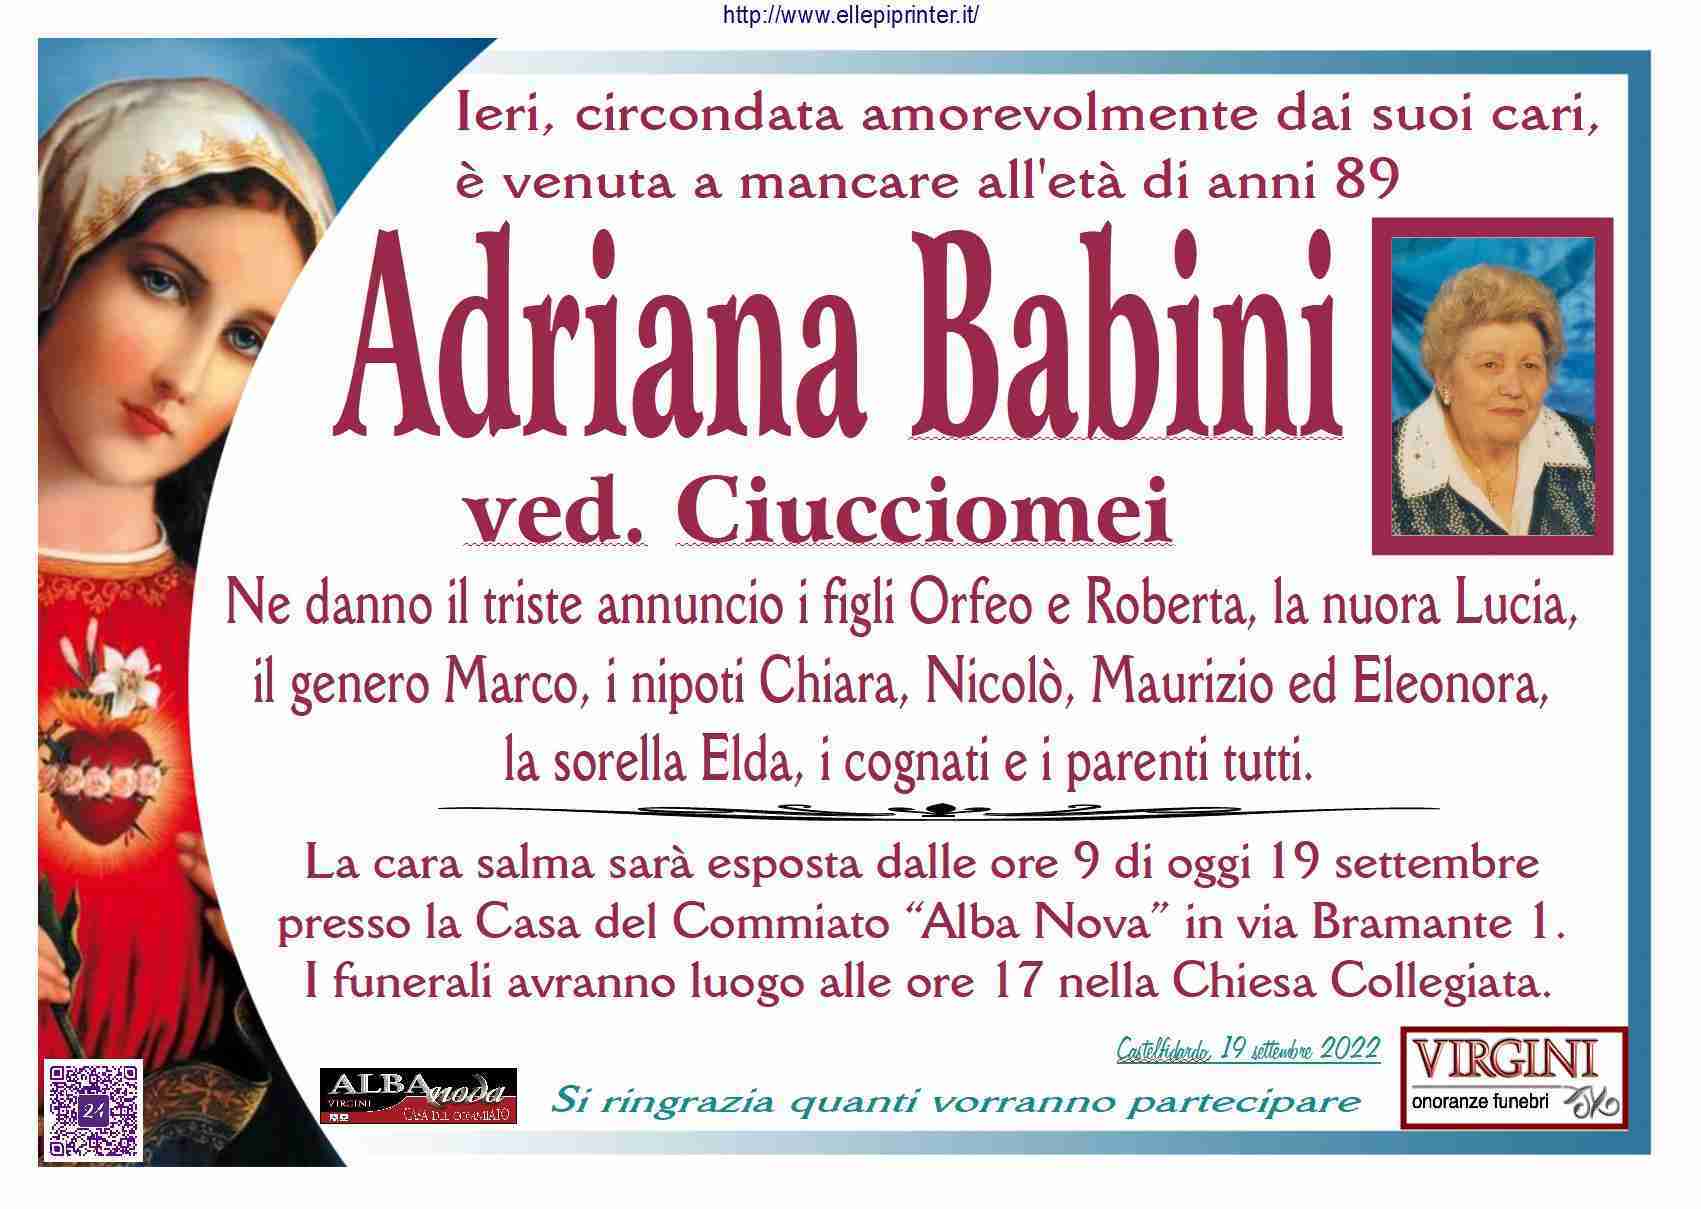 Adriana Babini